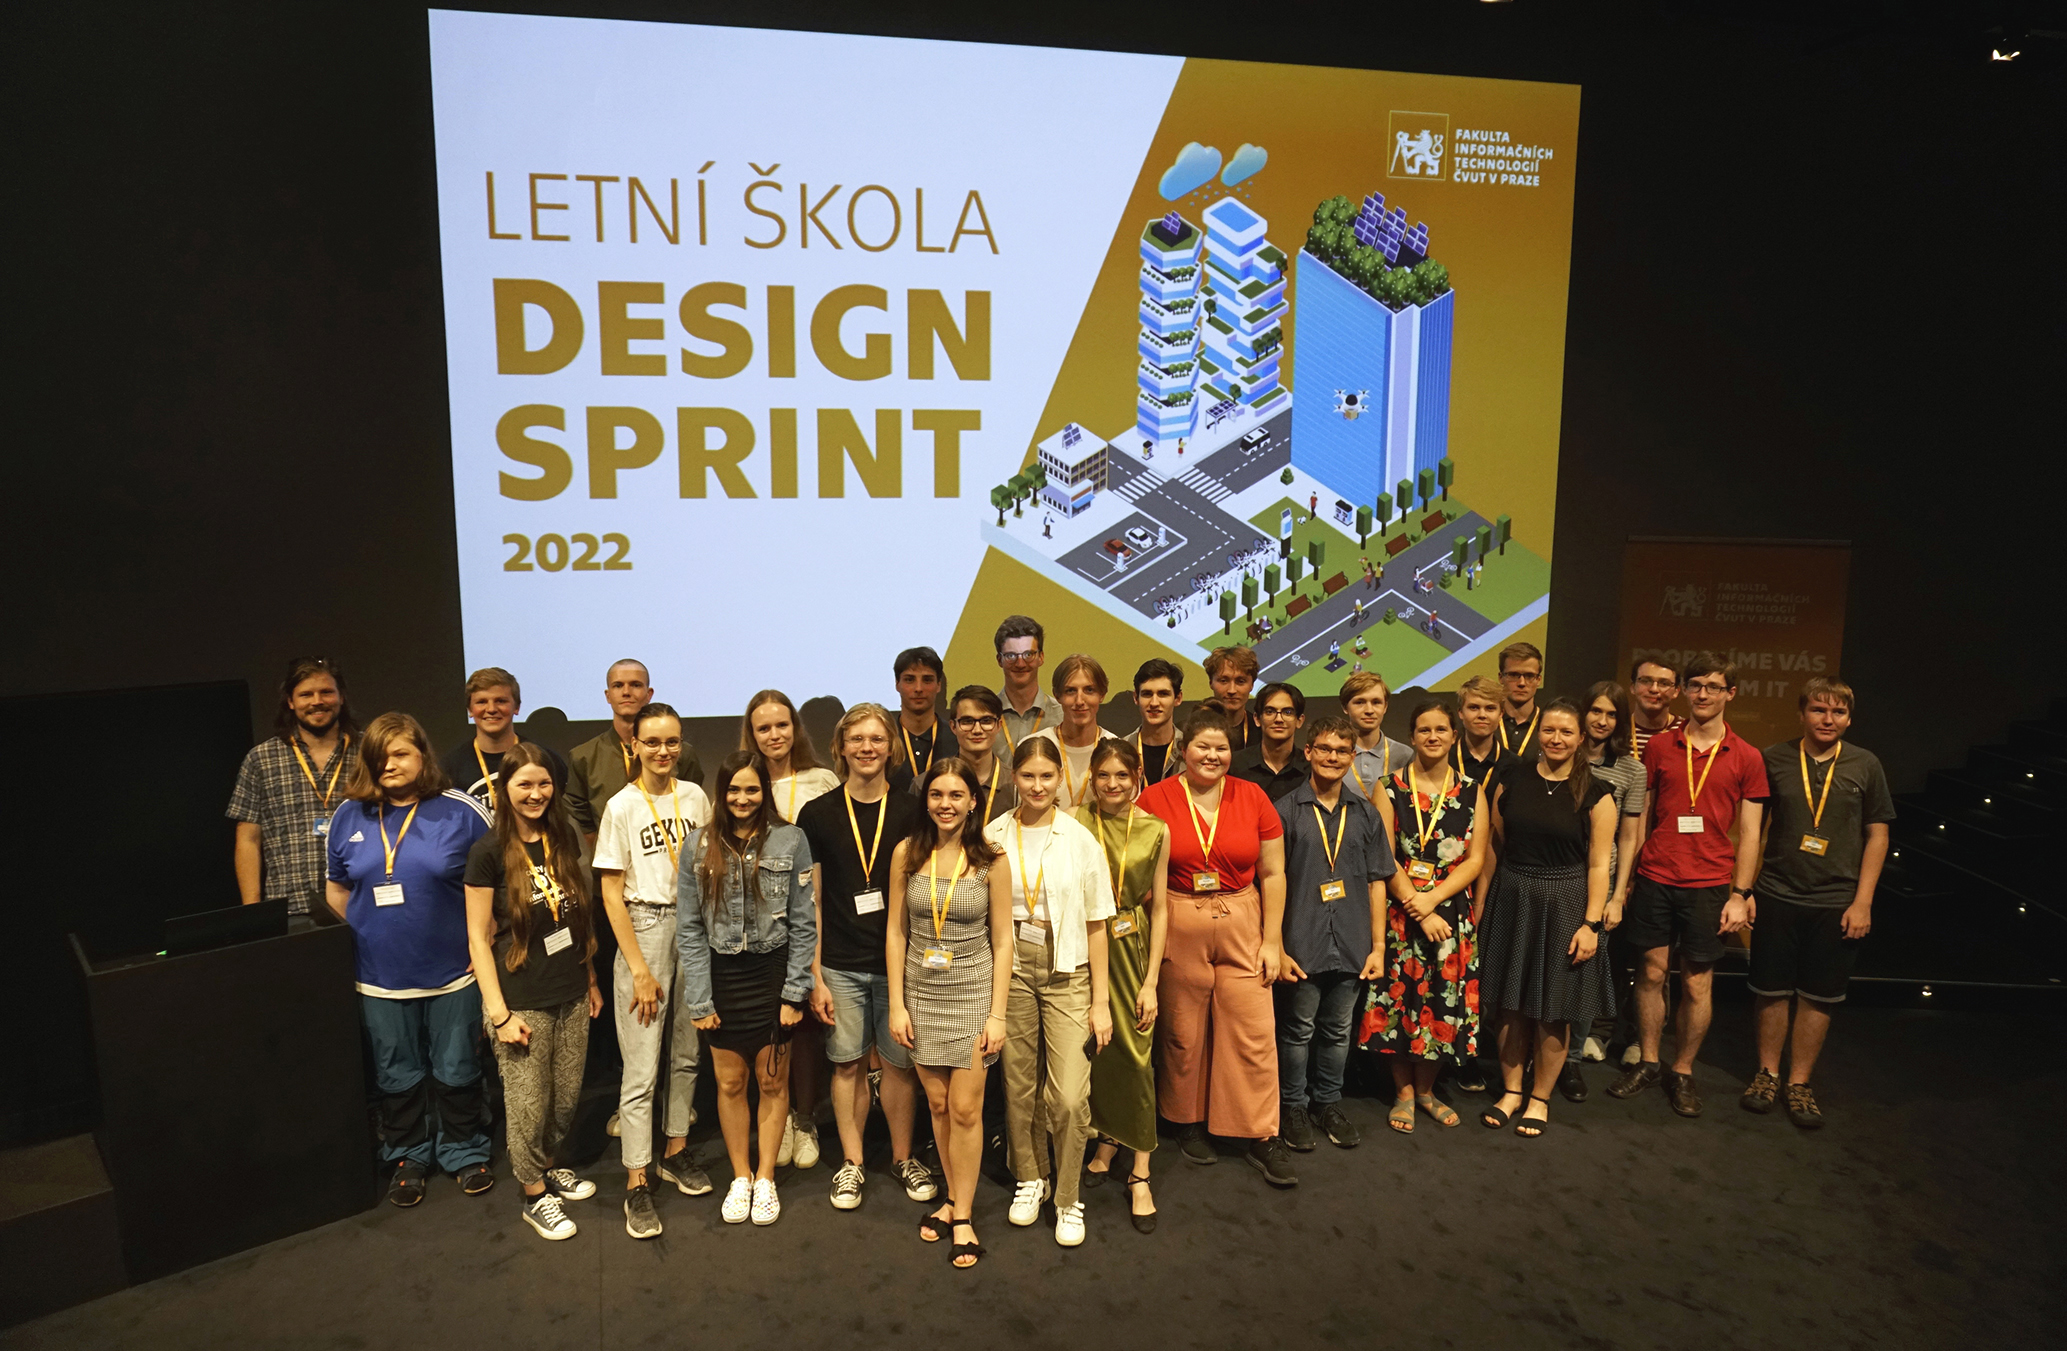 Letni skola Design Sprint 2022